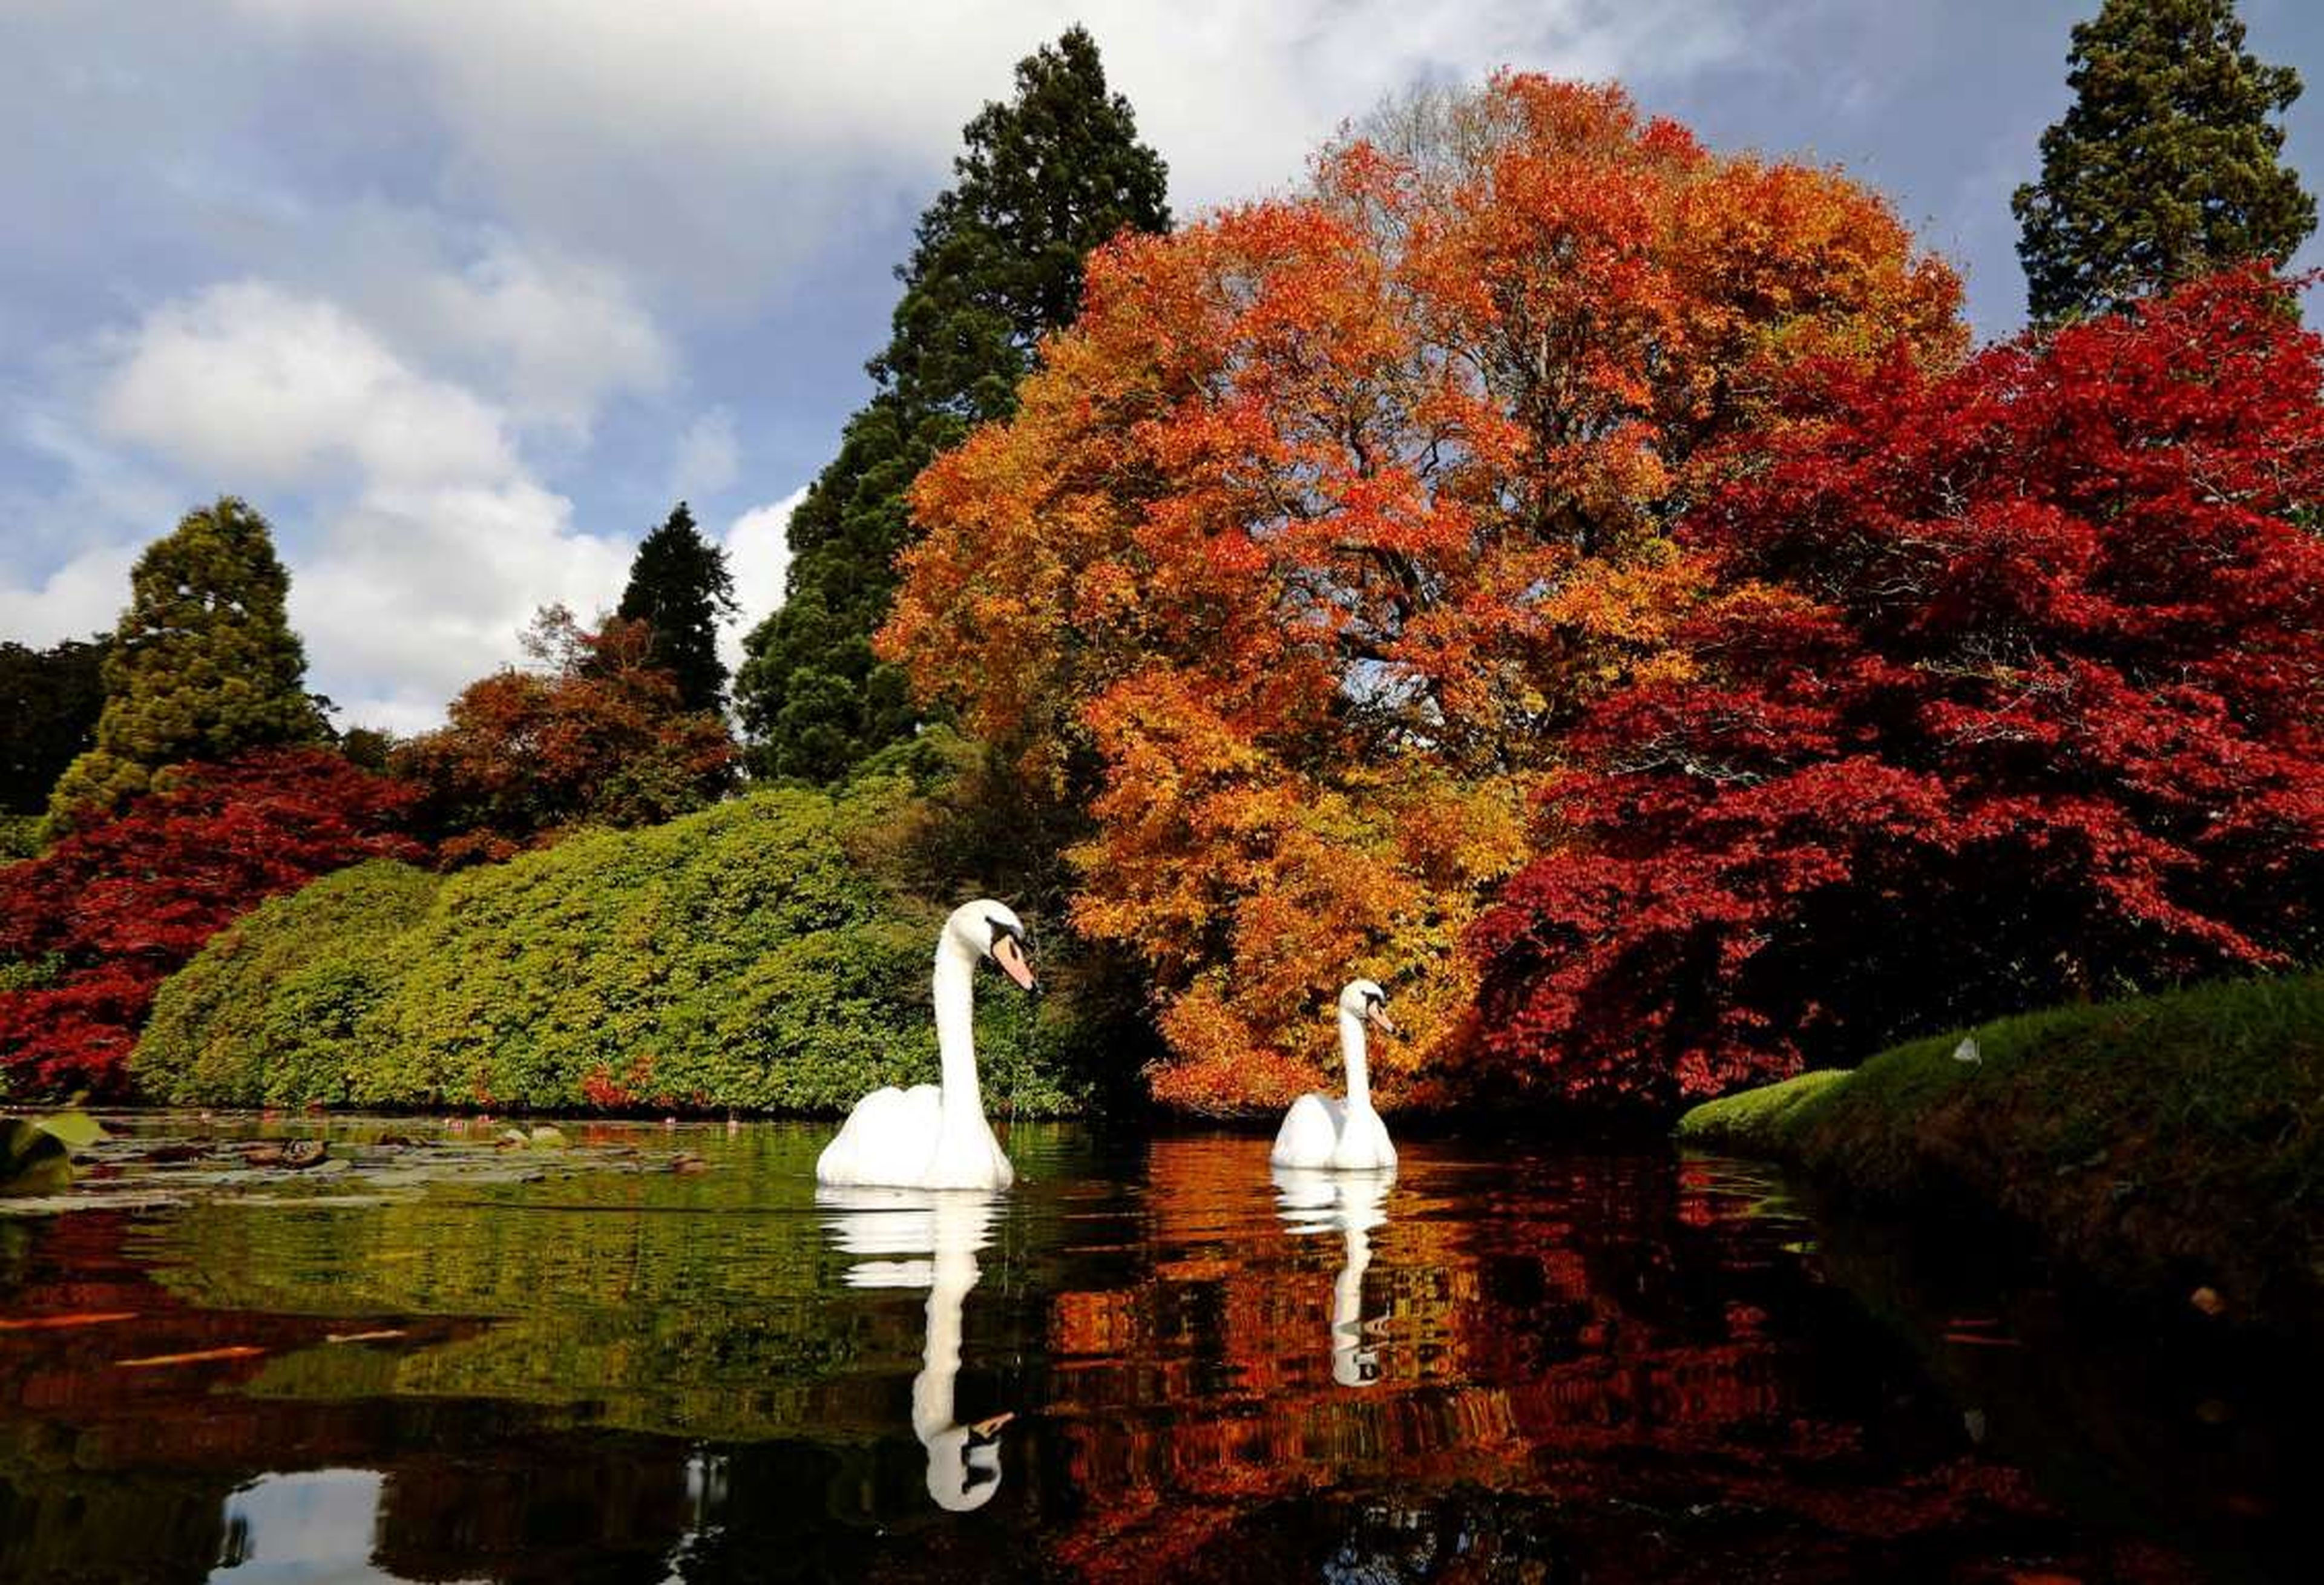 Los cisnes nadan mientras se ven las diferentes tonalidades del otoño en la vegetación en el Sheffield Park Gardens al sur de Inglaterra.